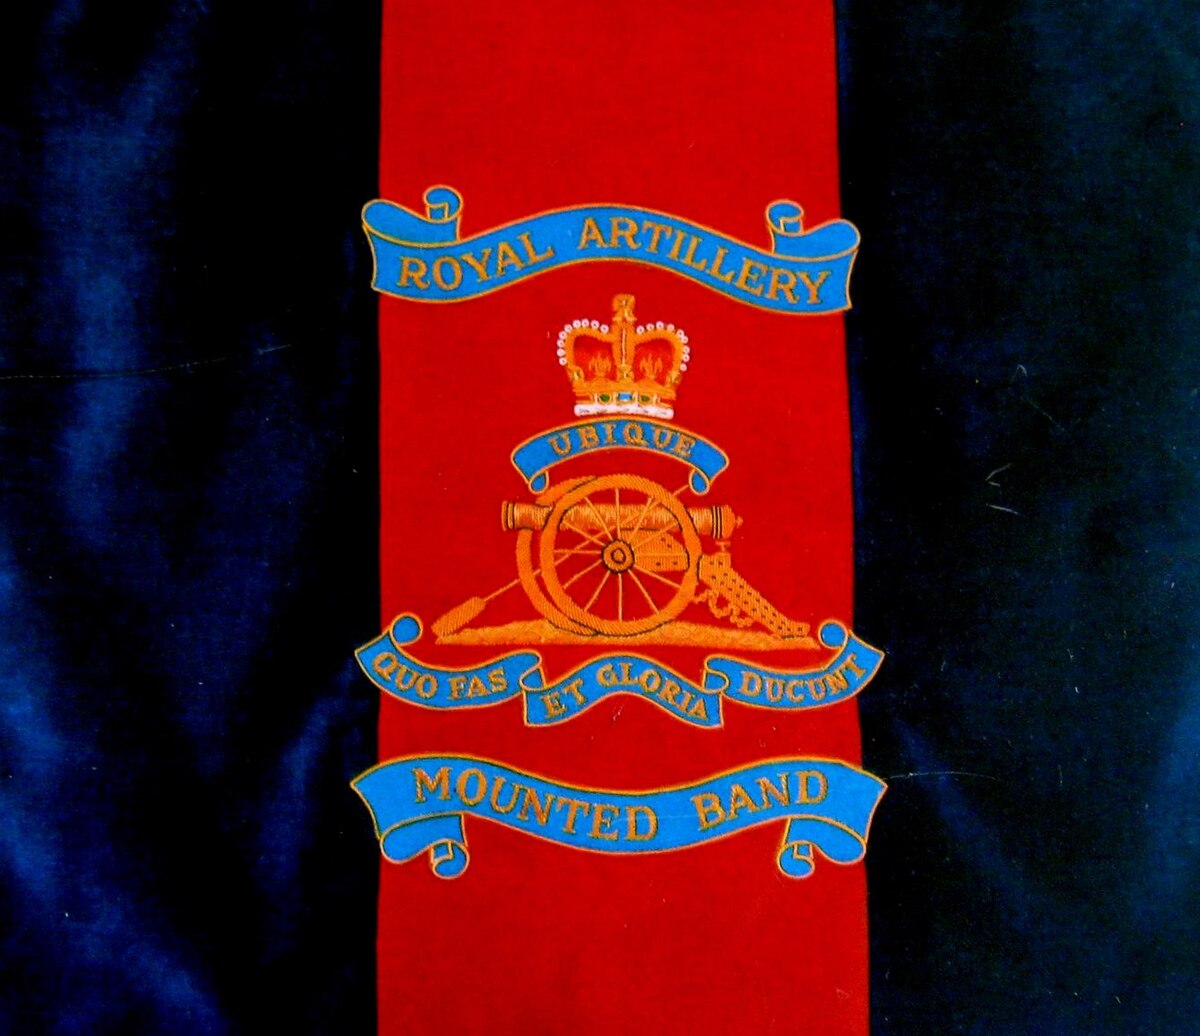 Royal Artillery Mounted Band - Wikipedia